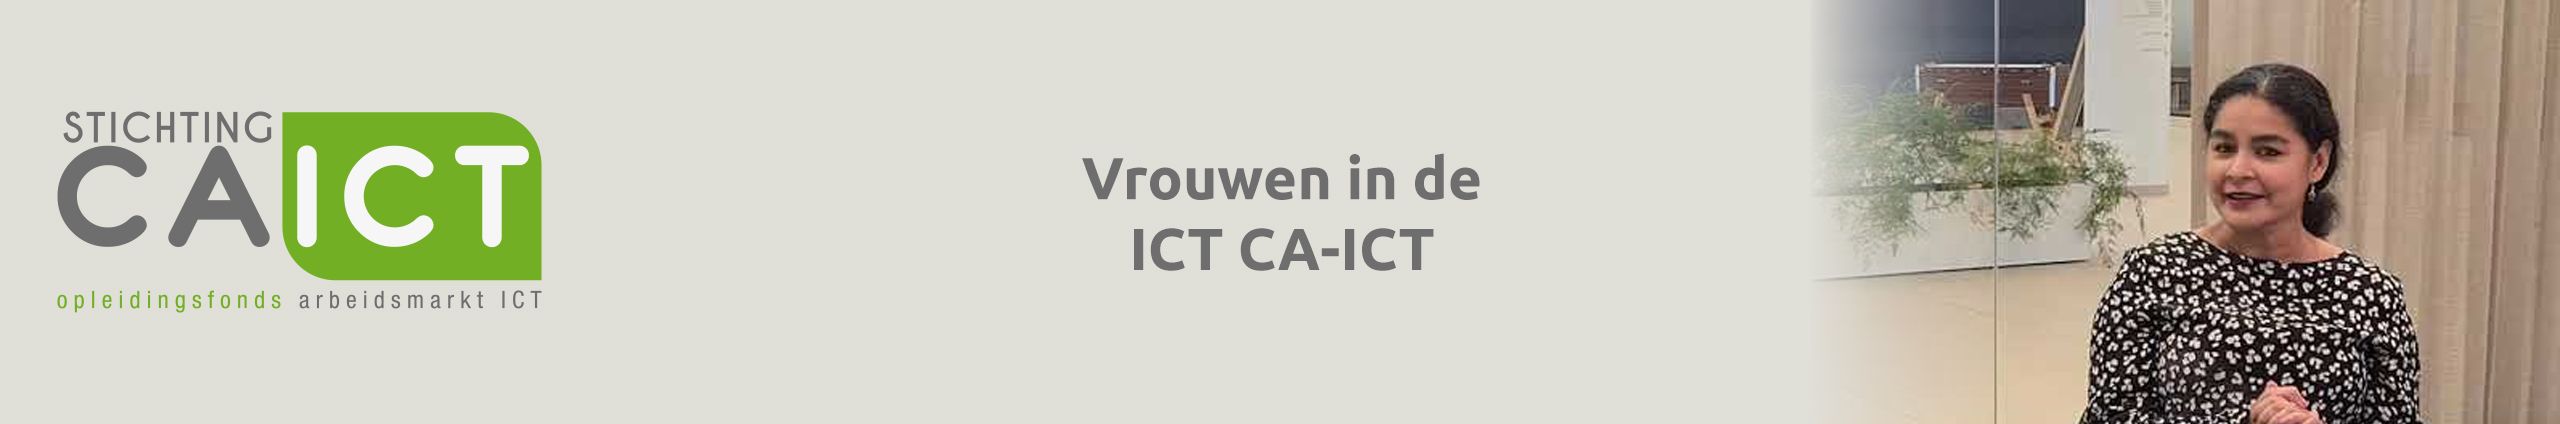 Vrouwen in de ICT CA-ICT